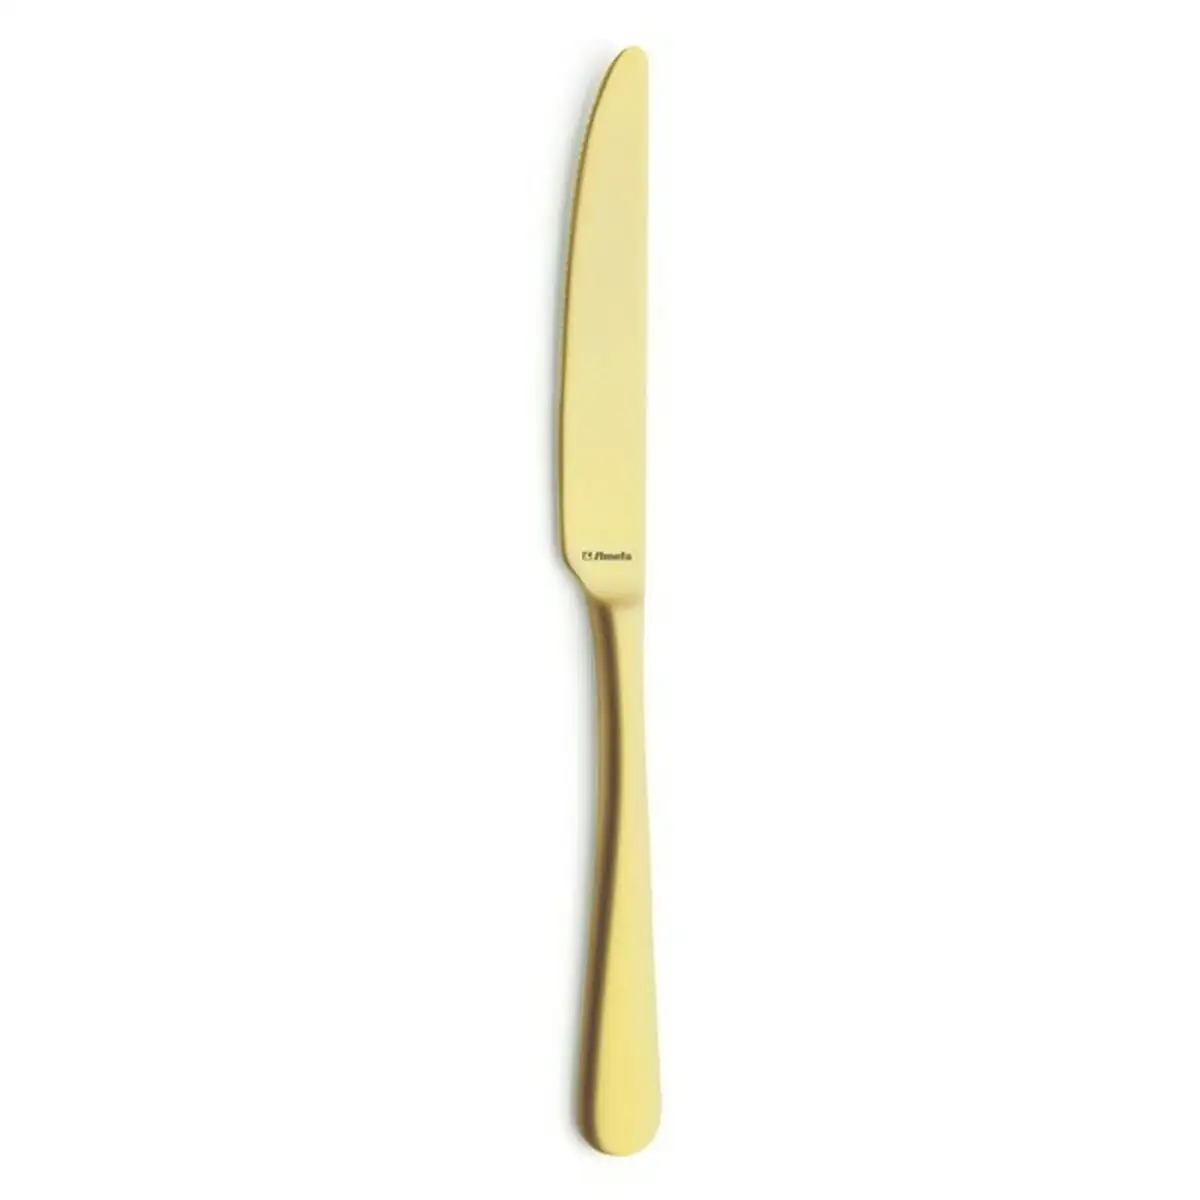 Couteau de table amefa austin dorado dore metal 23 5 cm 12 unites _2119. DIAYTAR SENEGAL - Votre Plateforme Shopping Engagée. Explorez notre catalogue et choisissez des produits qui reflètent notre dévouement envers la qualité et la satisfaction du client.